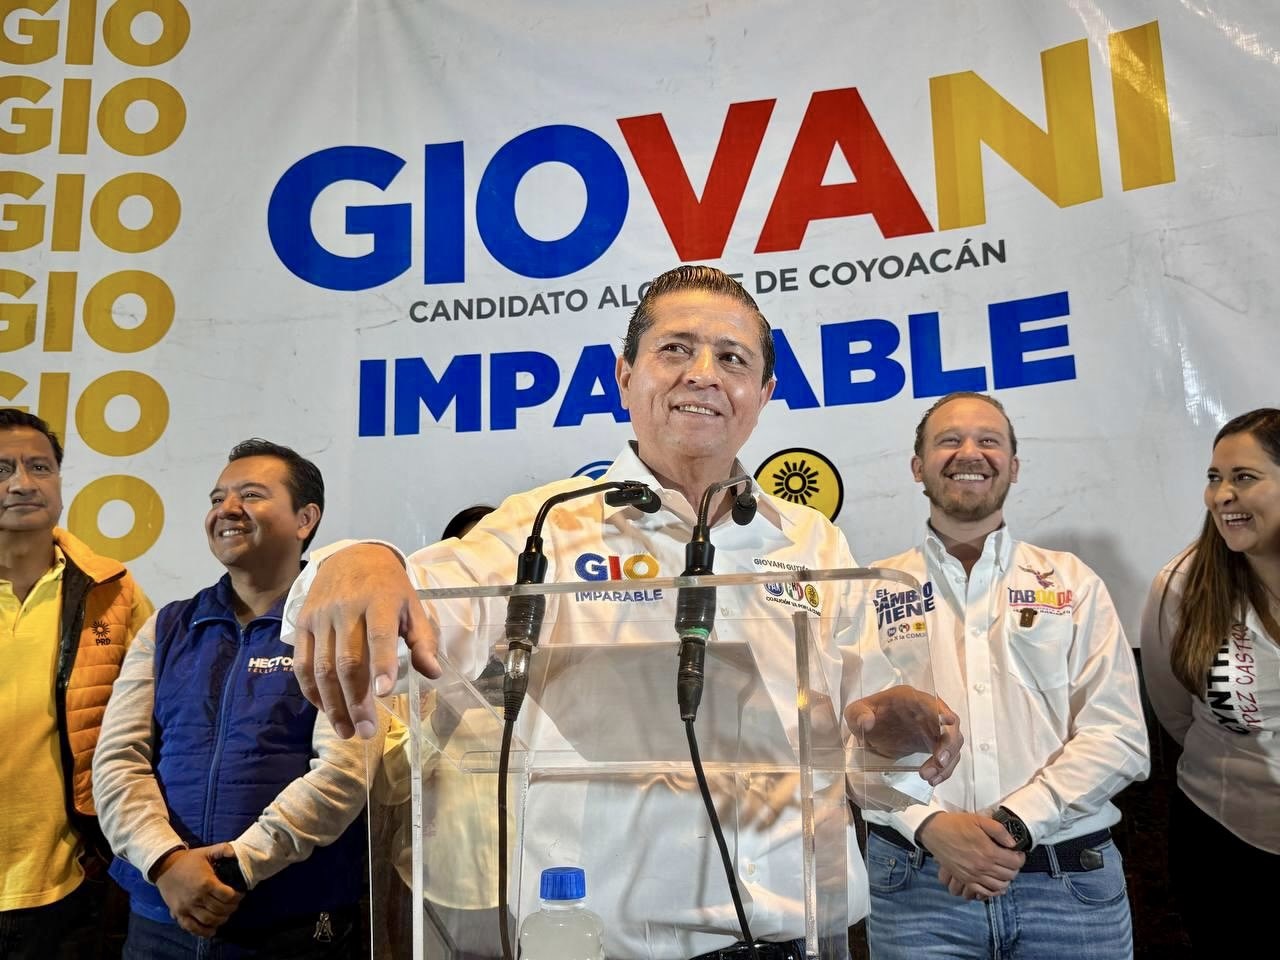 Arranca ‘El Imparable’ Gio campaña por reelección con 18% de ventaja